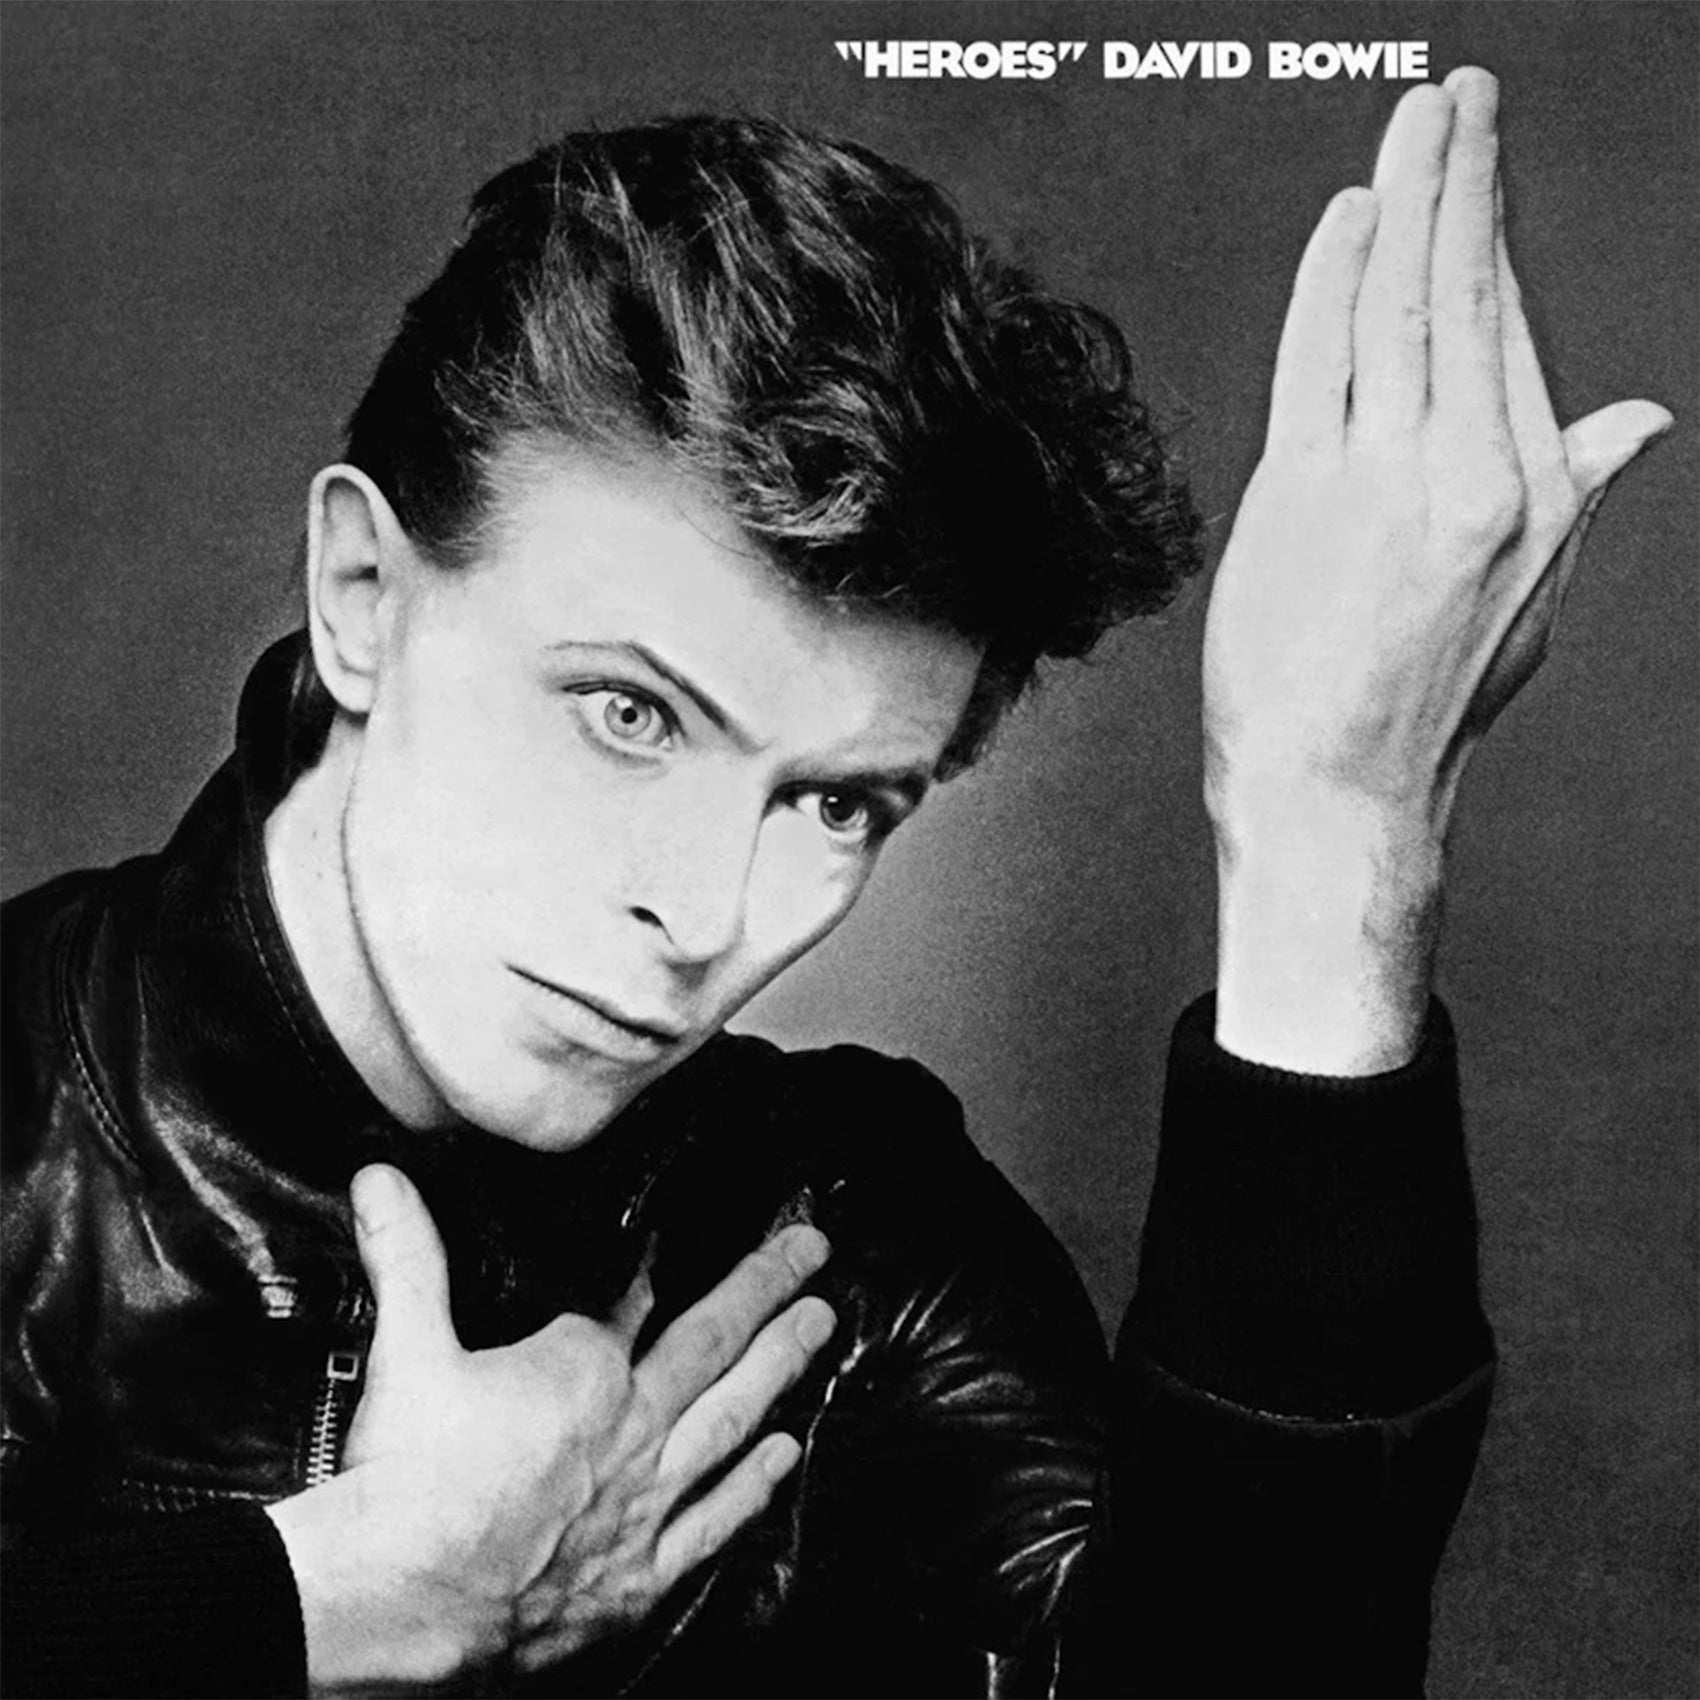 David Bowie - Heroes: Vinyl LP.